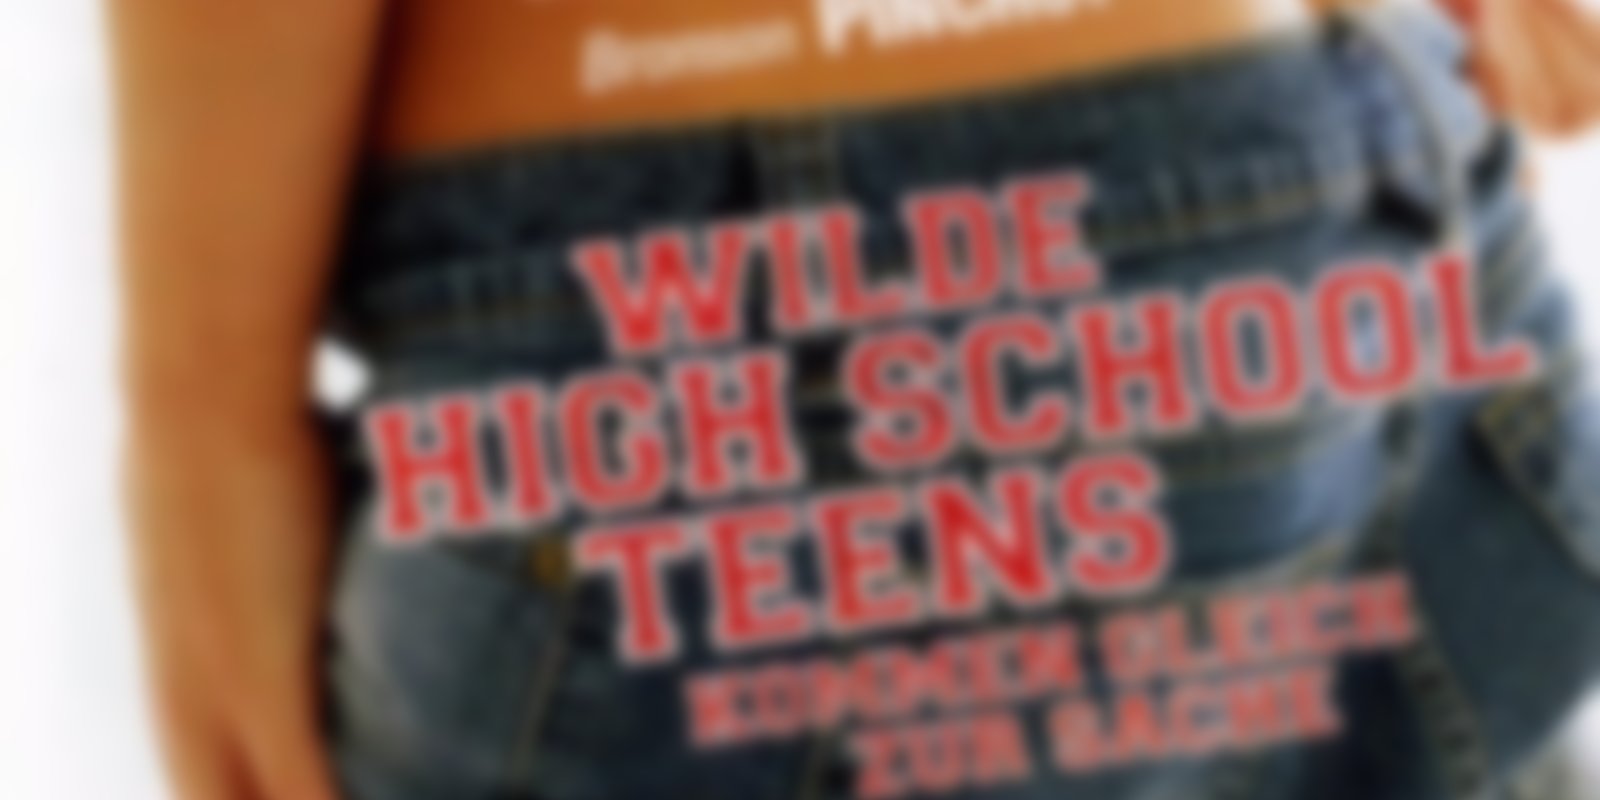 Wilde High School Teens kommen gleich zur Sache